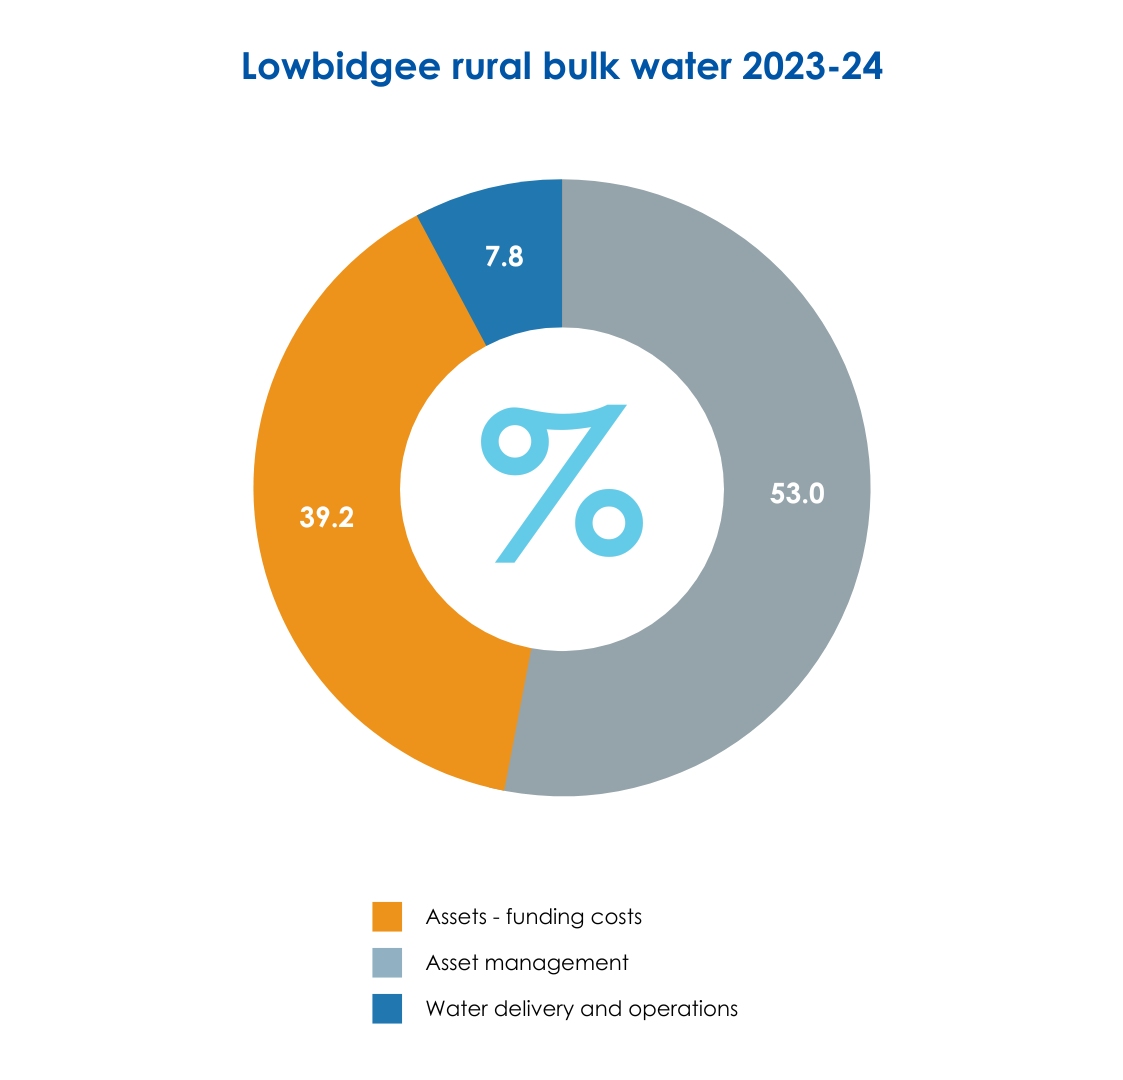 Lowbidgee rural bulk water 2023-24